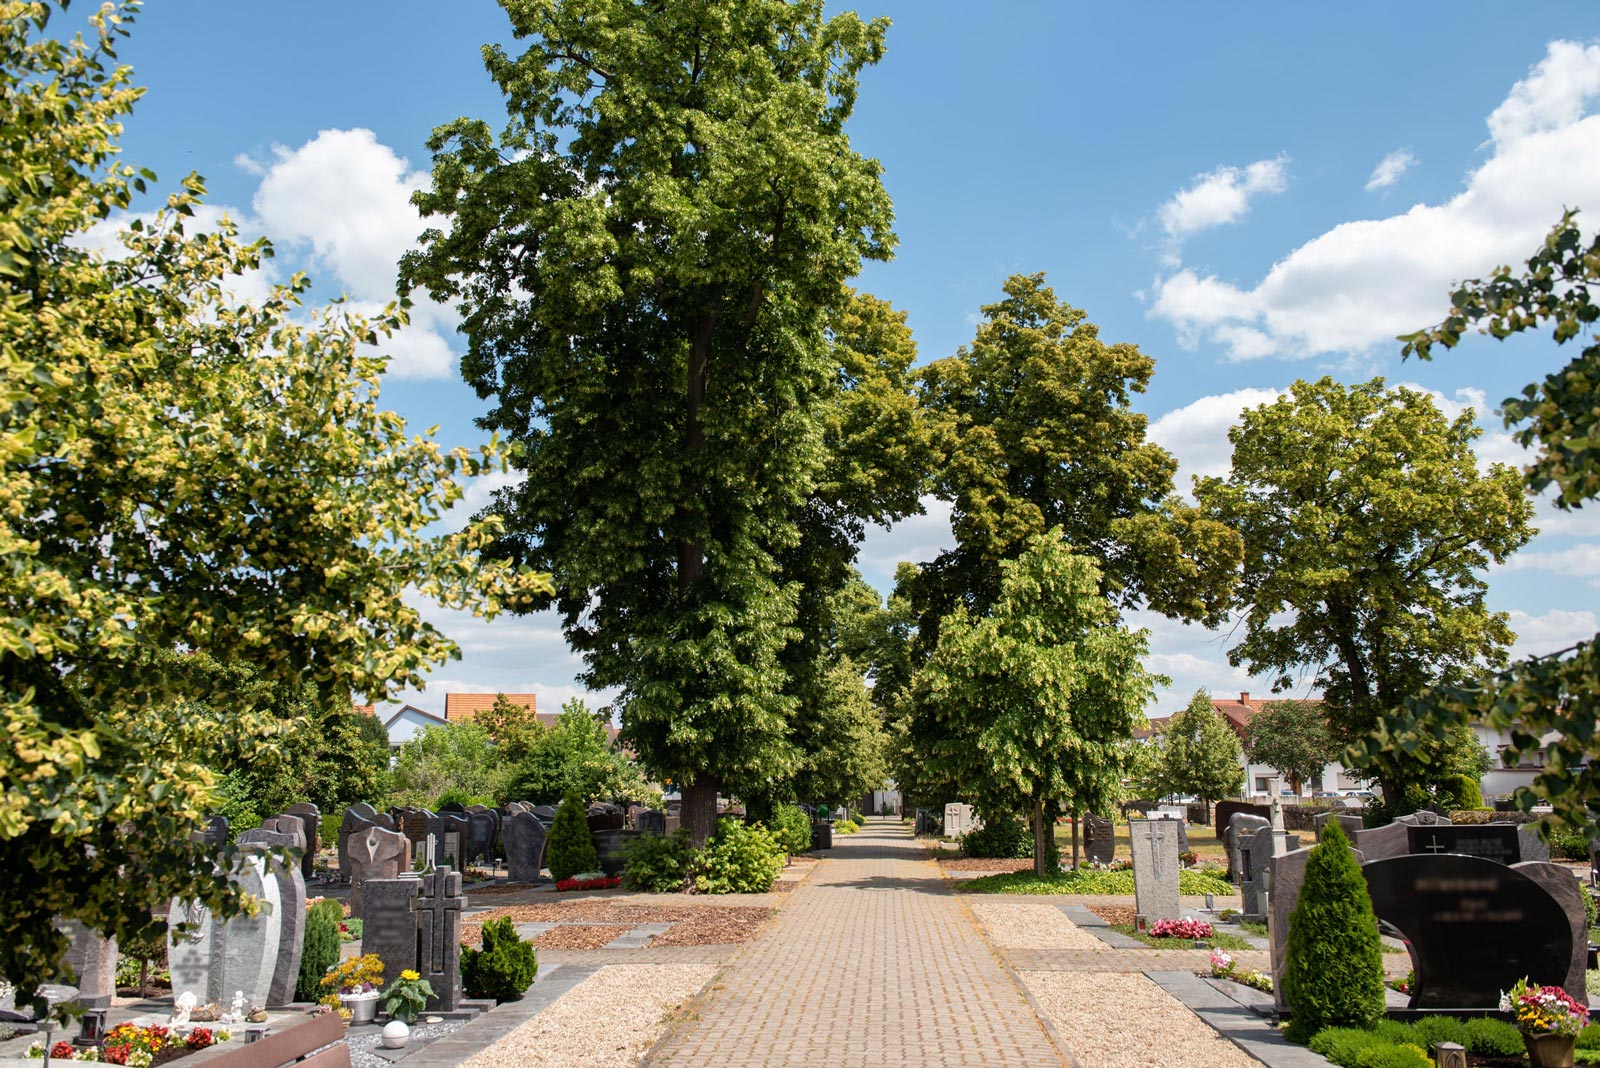 Friedhof Kronau